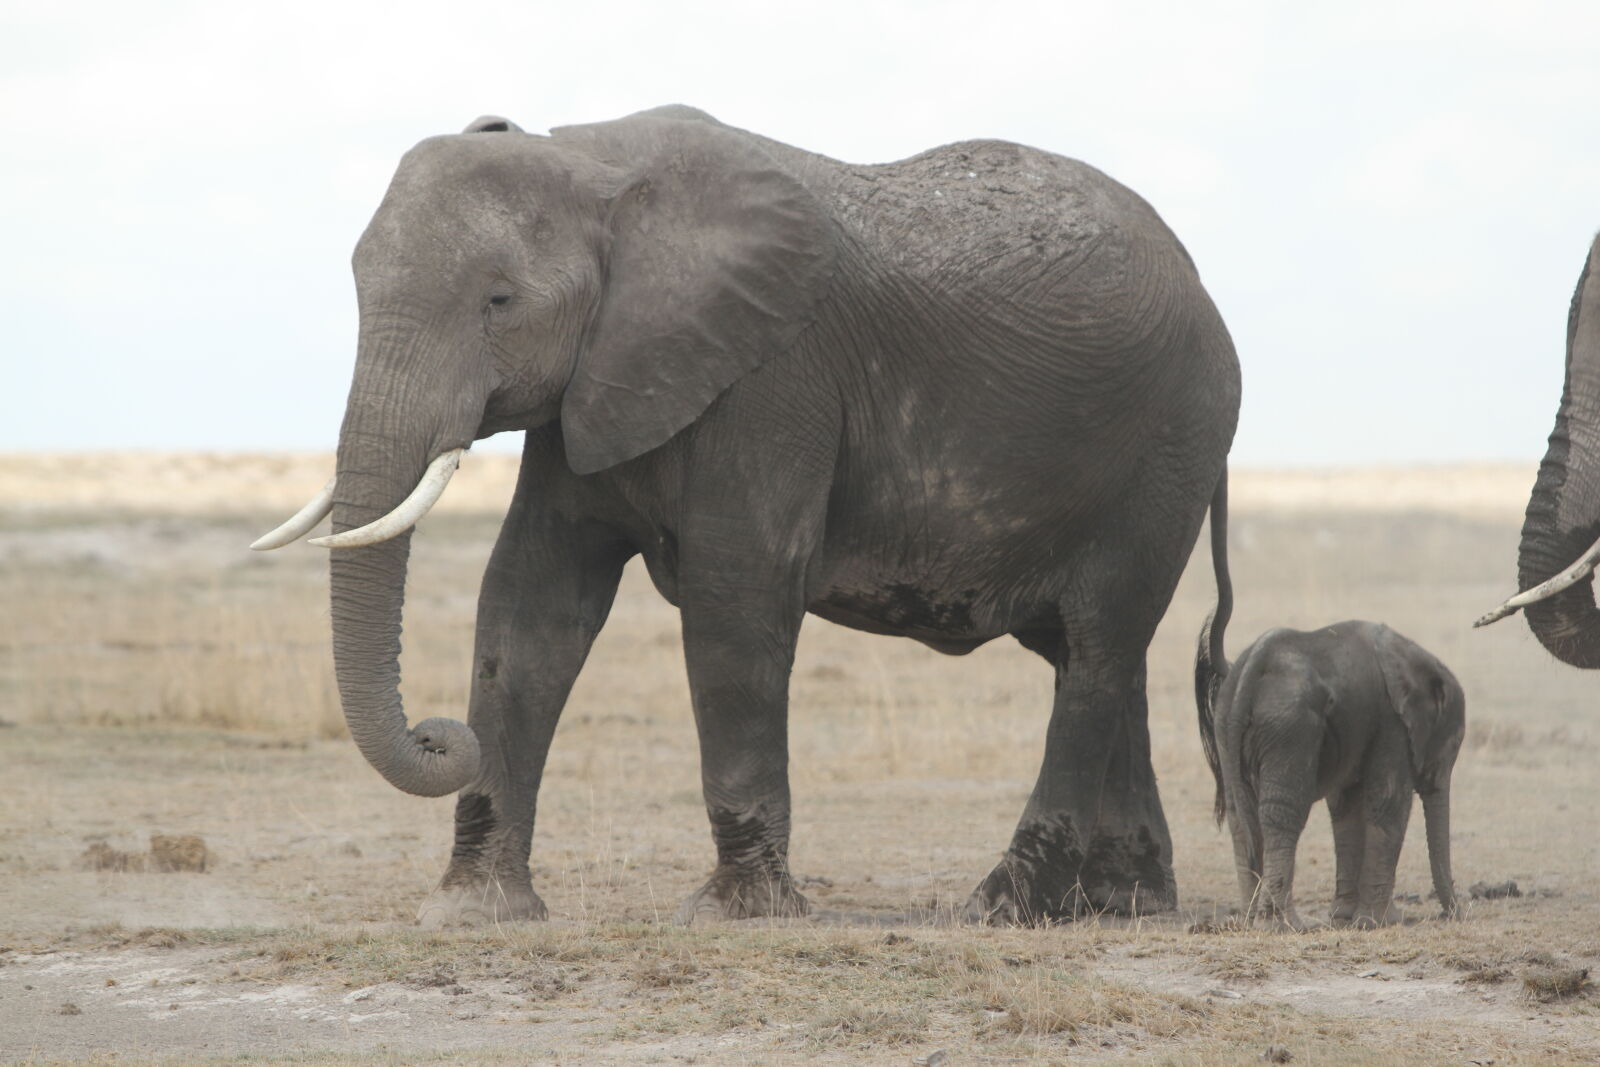 Canon EOS 7D sample photo. Elephants, kenya, giraffes, amboseli photography